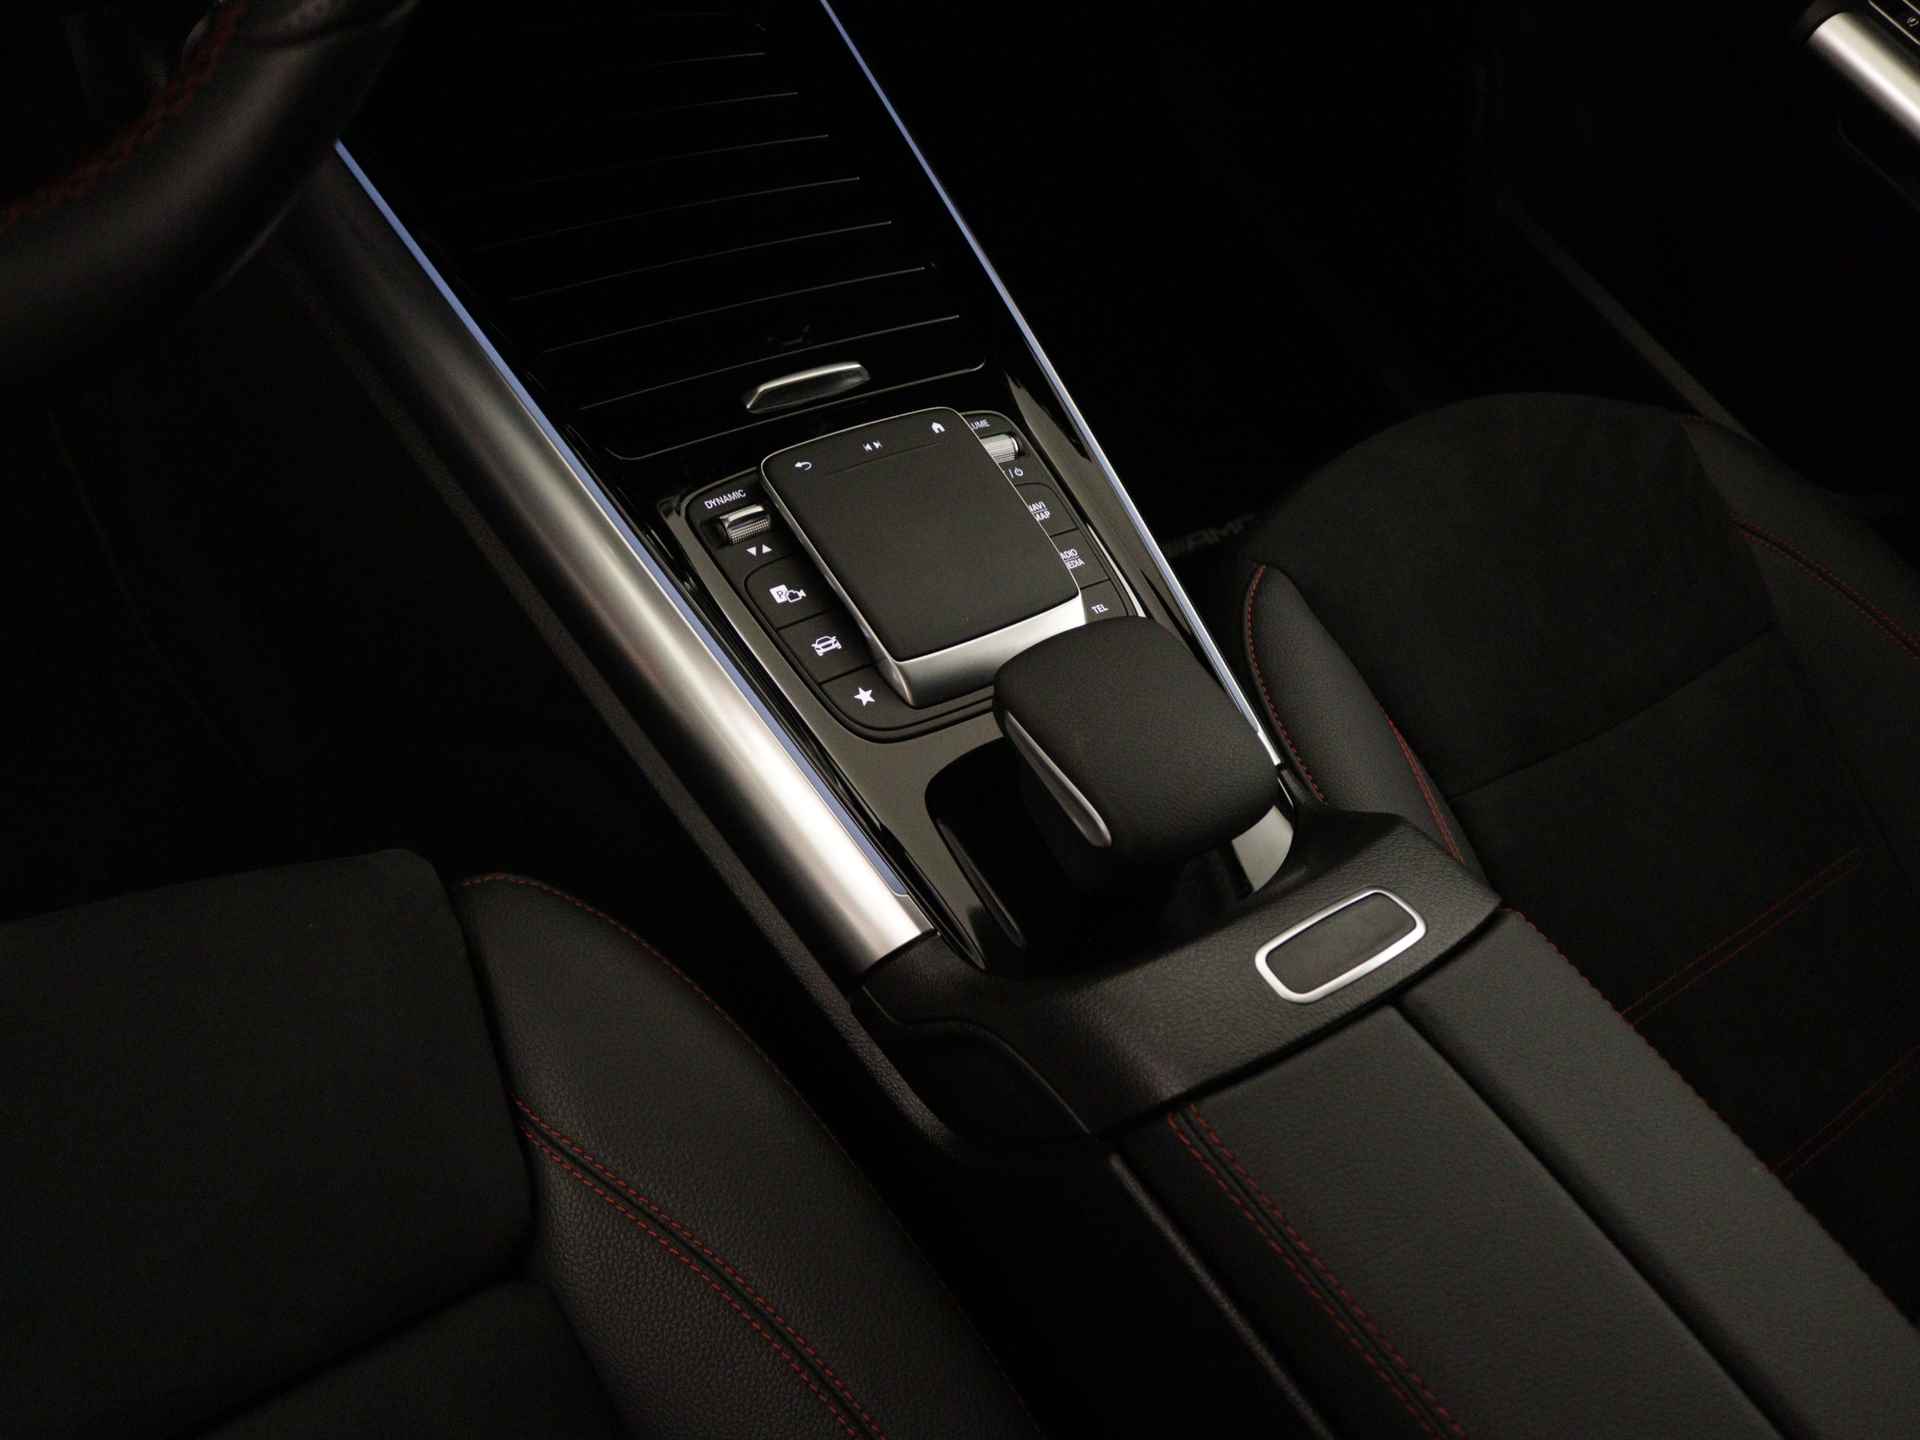 Mercedes-Benz B-Klasse 250 e AMG Line Limited Multispaaks lichtmetalen velgen | MBUX wide screen | Navigatie | Parking support | Inclusief 24 maanden Mercedes-Benz Certified garantie voor Europa. | - 33/45